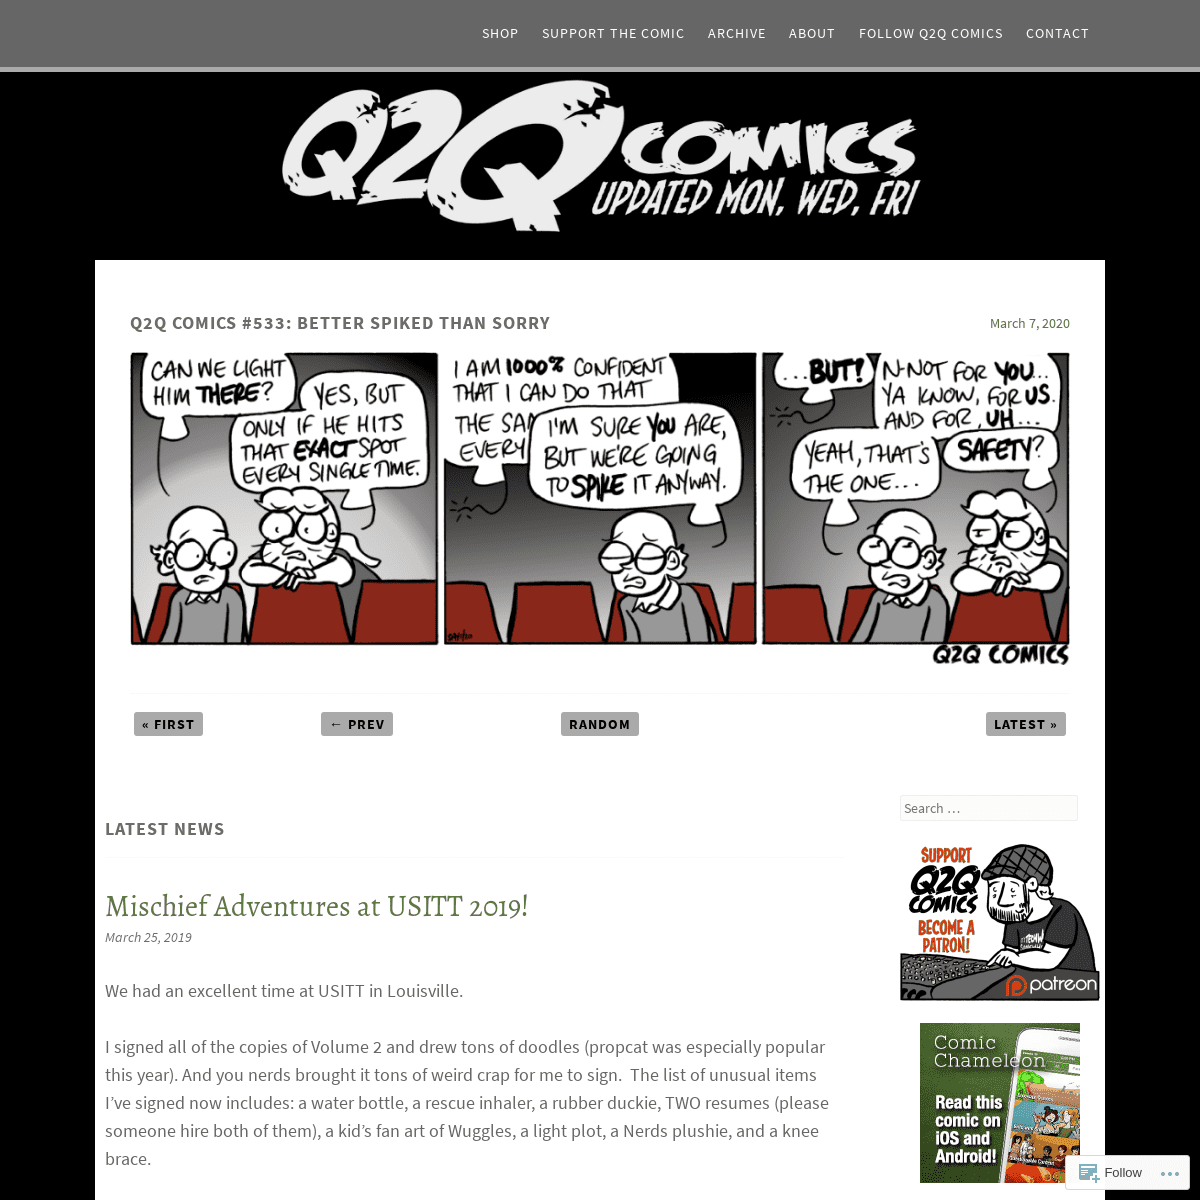 A complete backup of q2qcomics.com